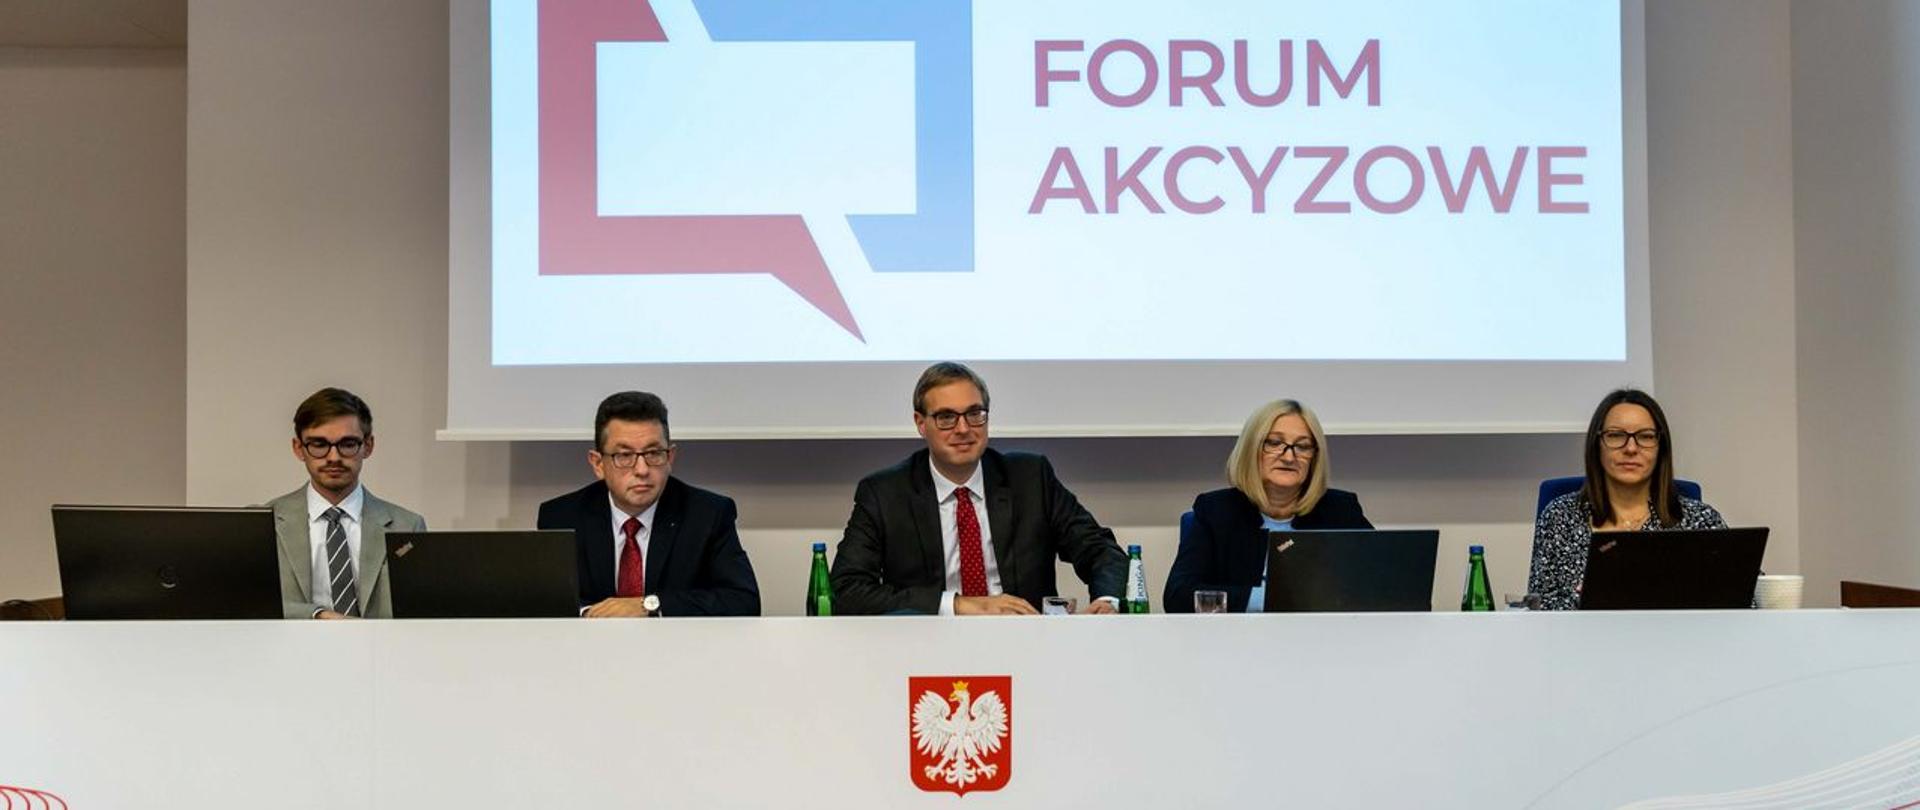 Stół prezydialny, uczestnicy spotkania, w tle wyświetlony napis Forum Akcyzowe.